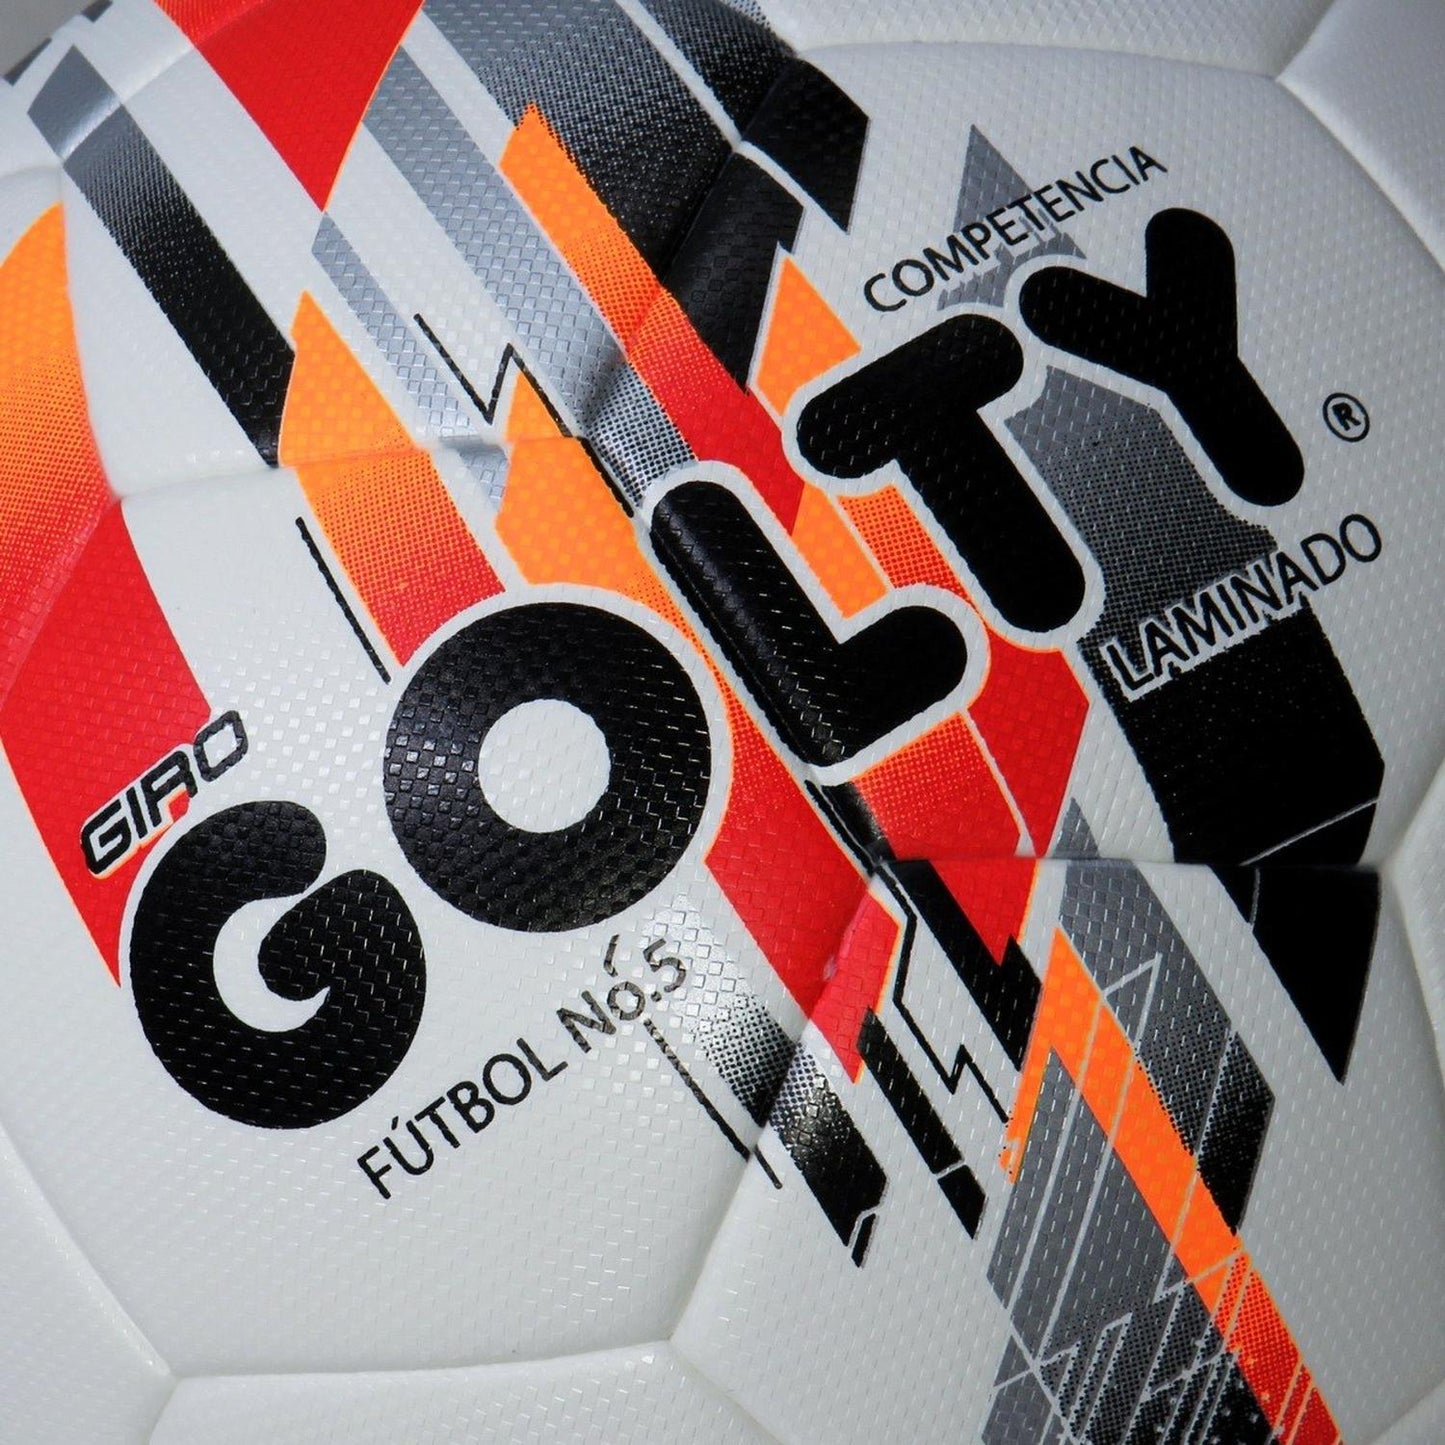 Balon de Futbol Competitivo Golty Giro Laminado